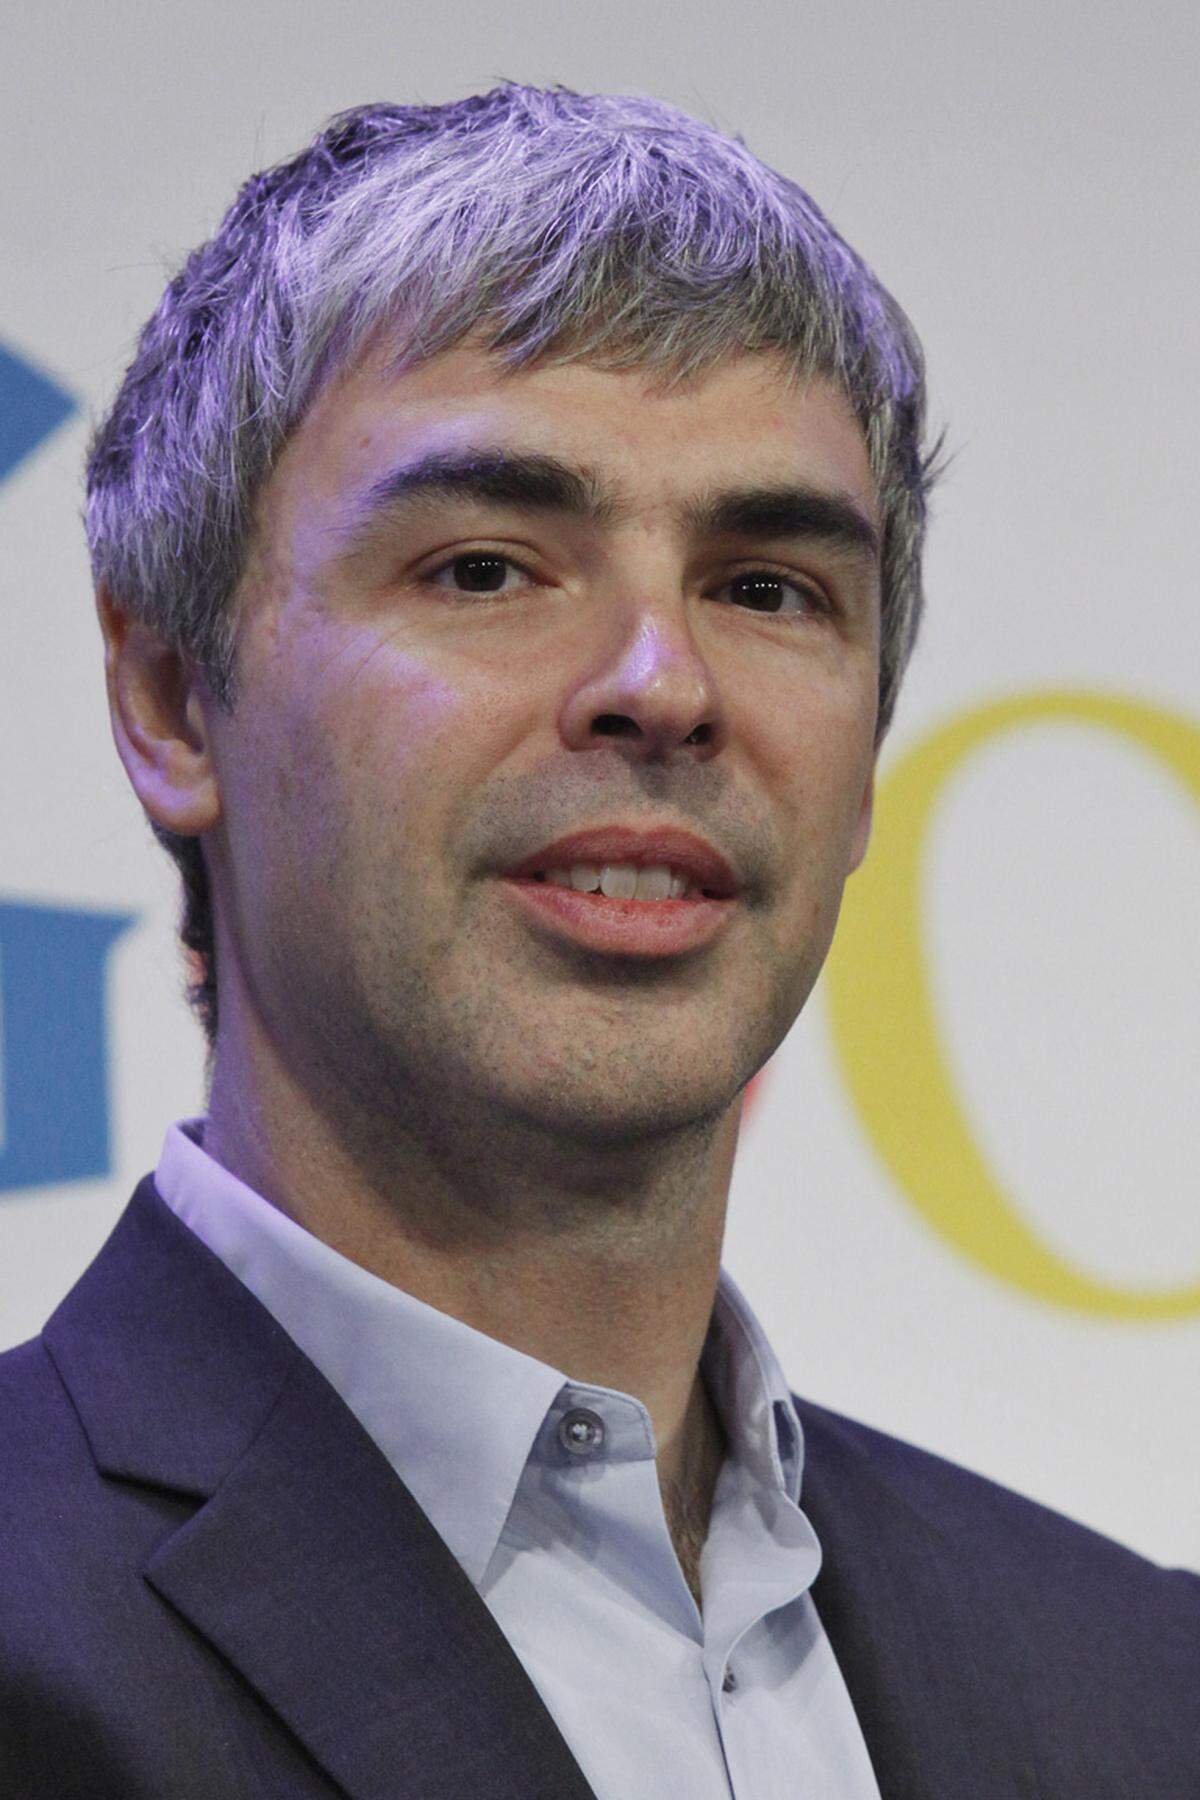 Der zweite Google-Gründer Larry Page schafft es mit 29,7 Milliarden Dollar nur mehr auf Platz 5 im Forbes-Ranking. Im Vorjahr war es noch Platz 4 mit 32,3 Milliarden Dollar.